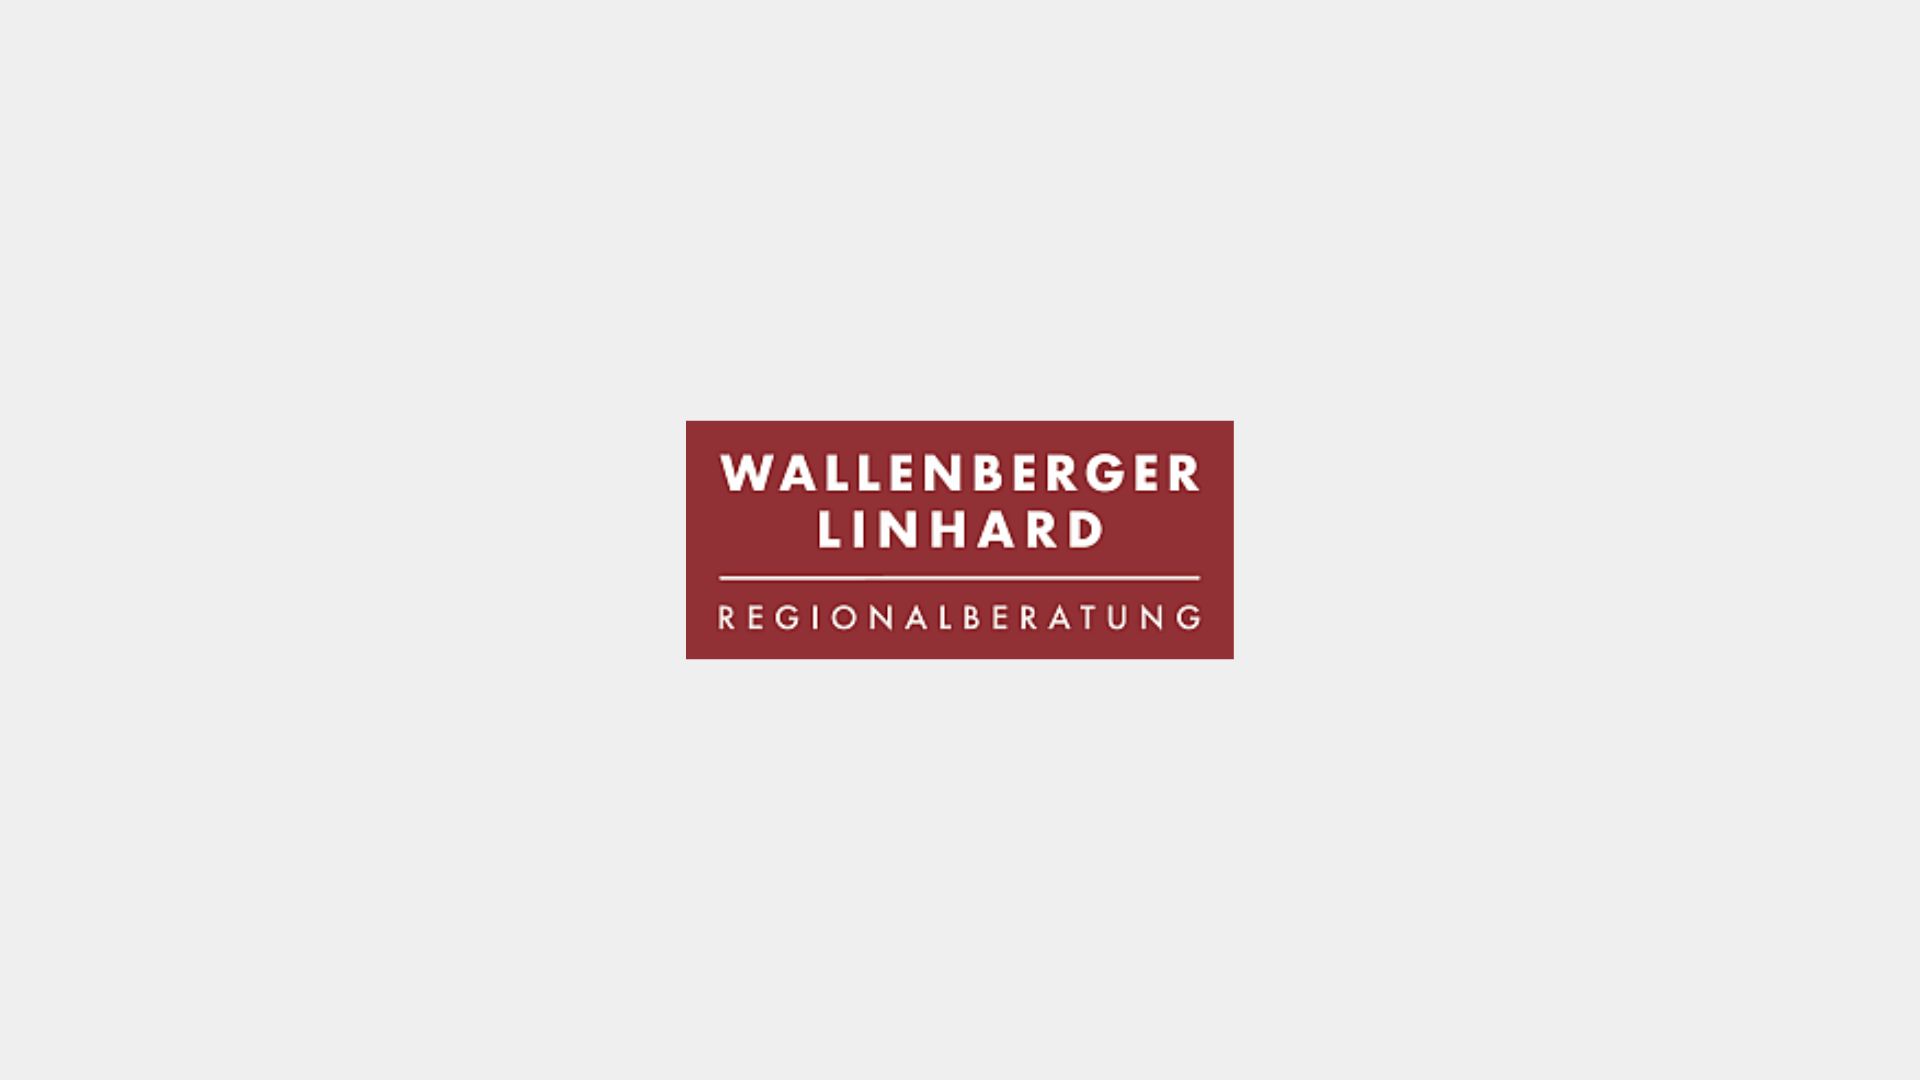 Wallenberger & Linhard Regionalberatung